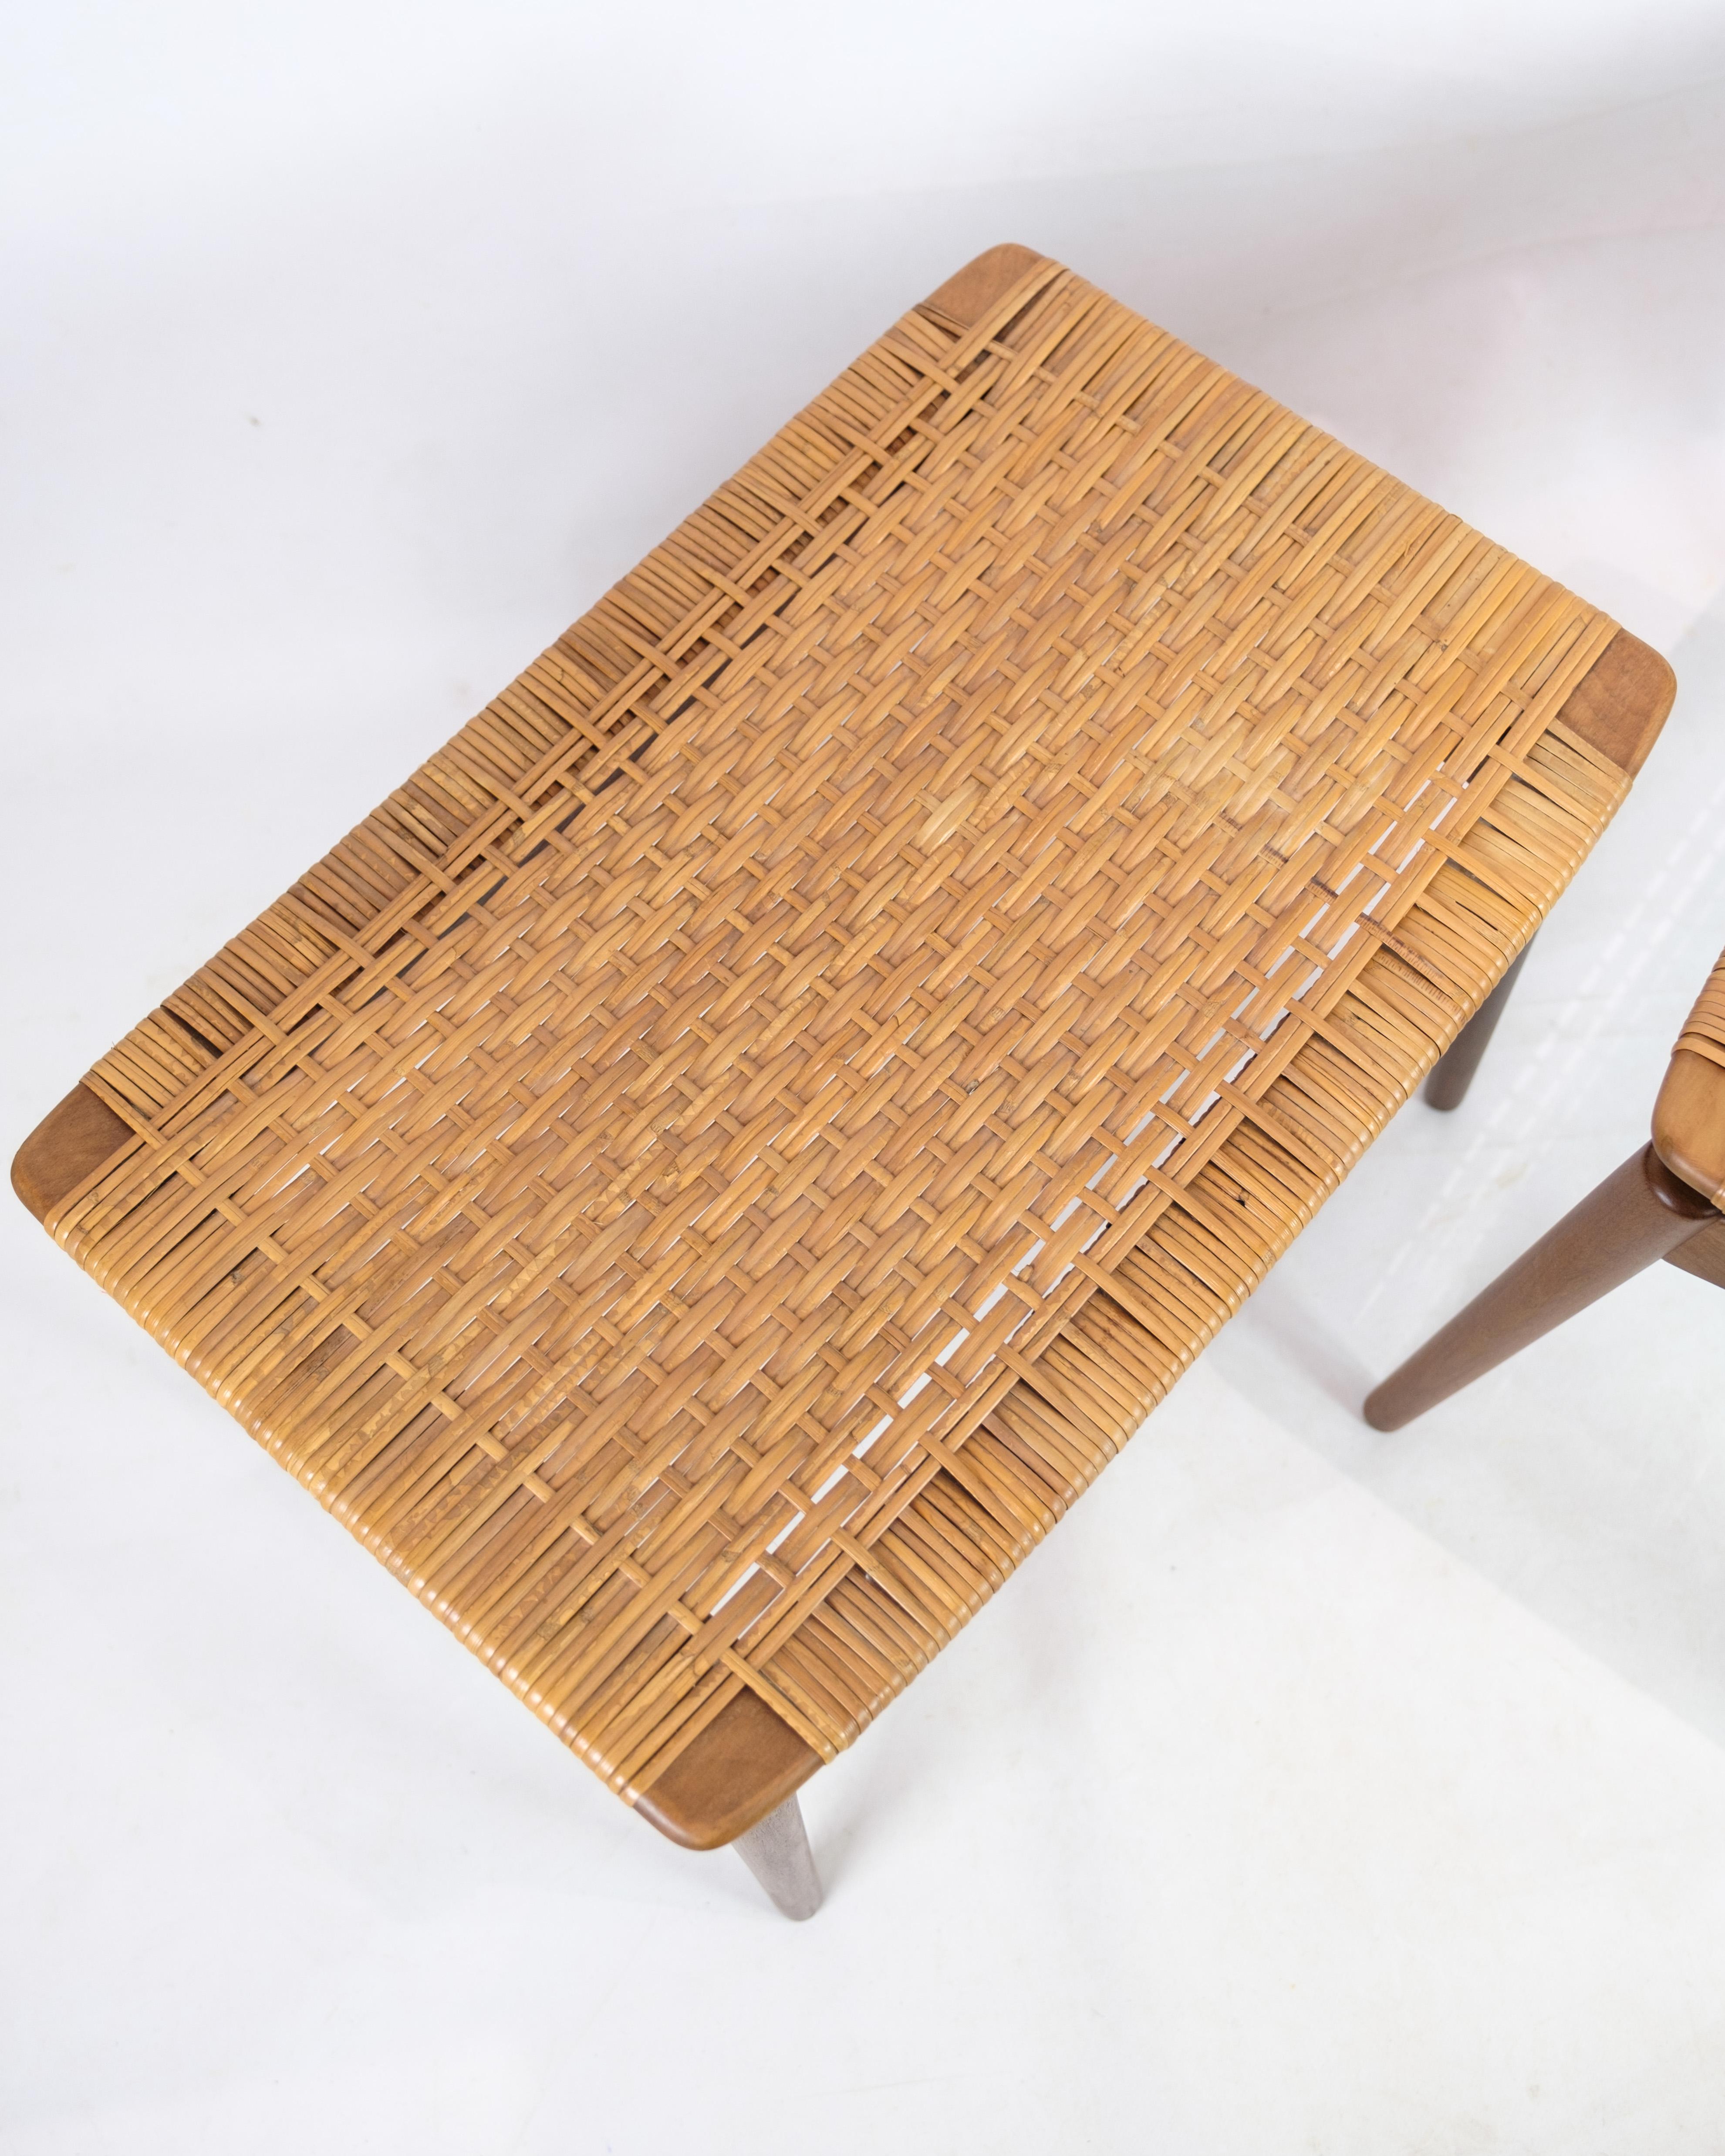 Ein von Sigfred Omann für die Ølholm Møbelfabrik entworfener Hocker aus Teakholz aus den 1960er Jahren ist ein schönes Beispiel für dänisches Möbeldesign aus der beliebten Zeit der Jahrhundertmitte.

Sigfred Omann war ein bekannter dänischer